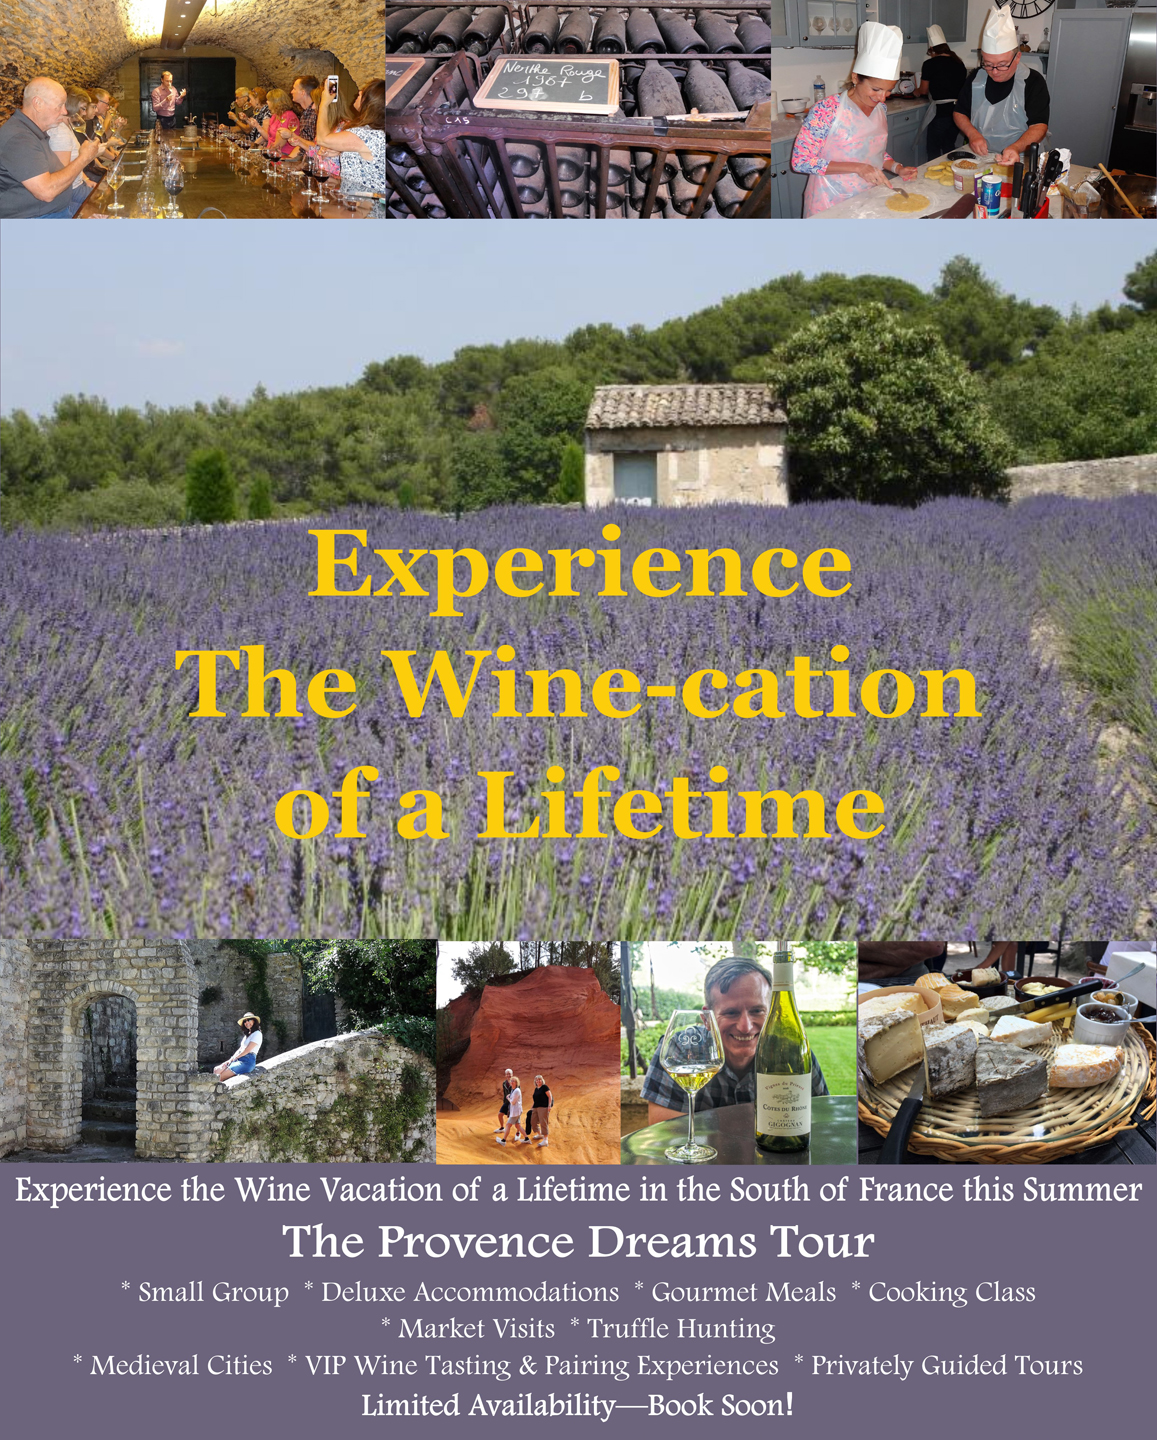 Provence Dreams Tour